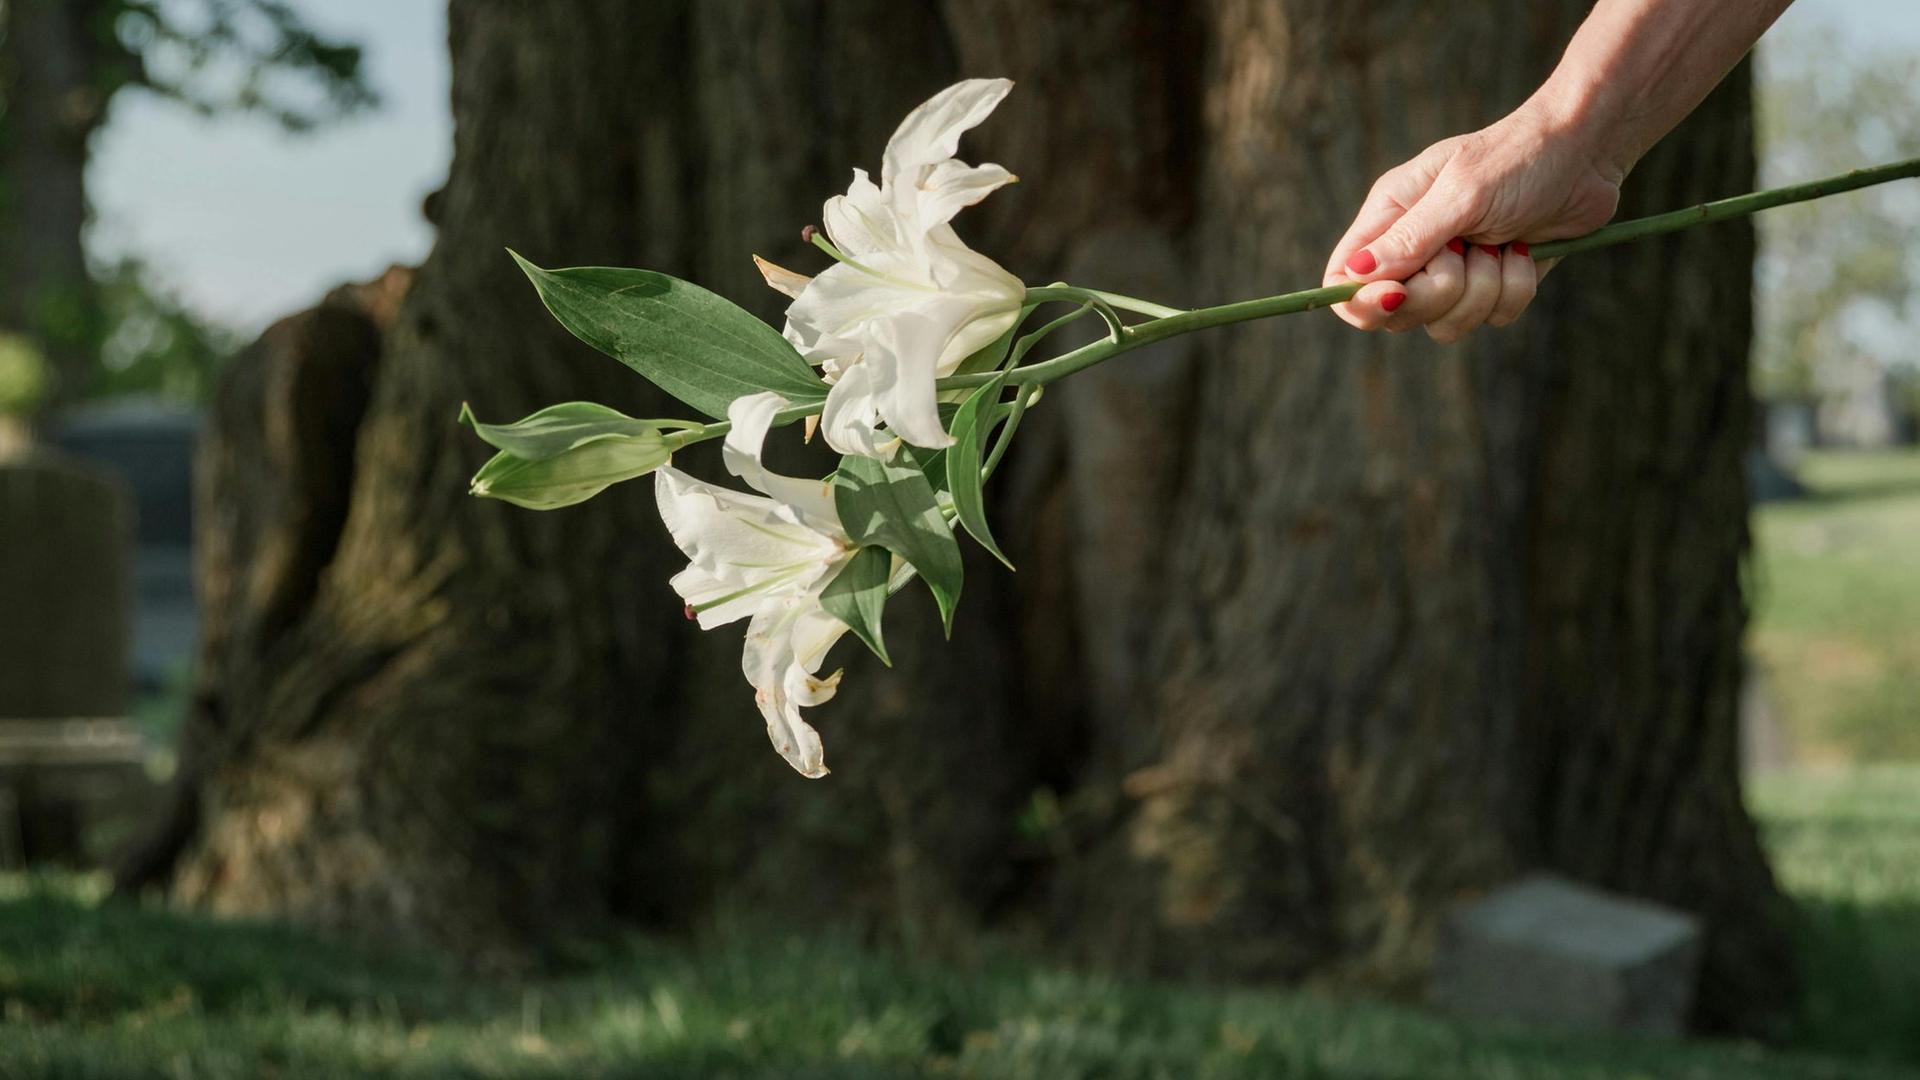 Der Blick fällt auf die Hand einer jungen Frau, die gerade eine weiße Lilie auf ein Grab legt.